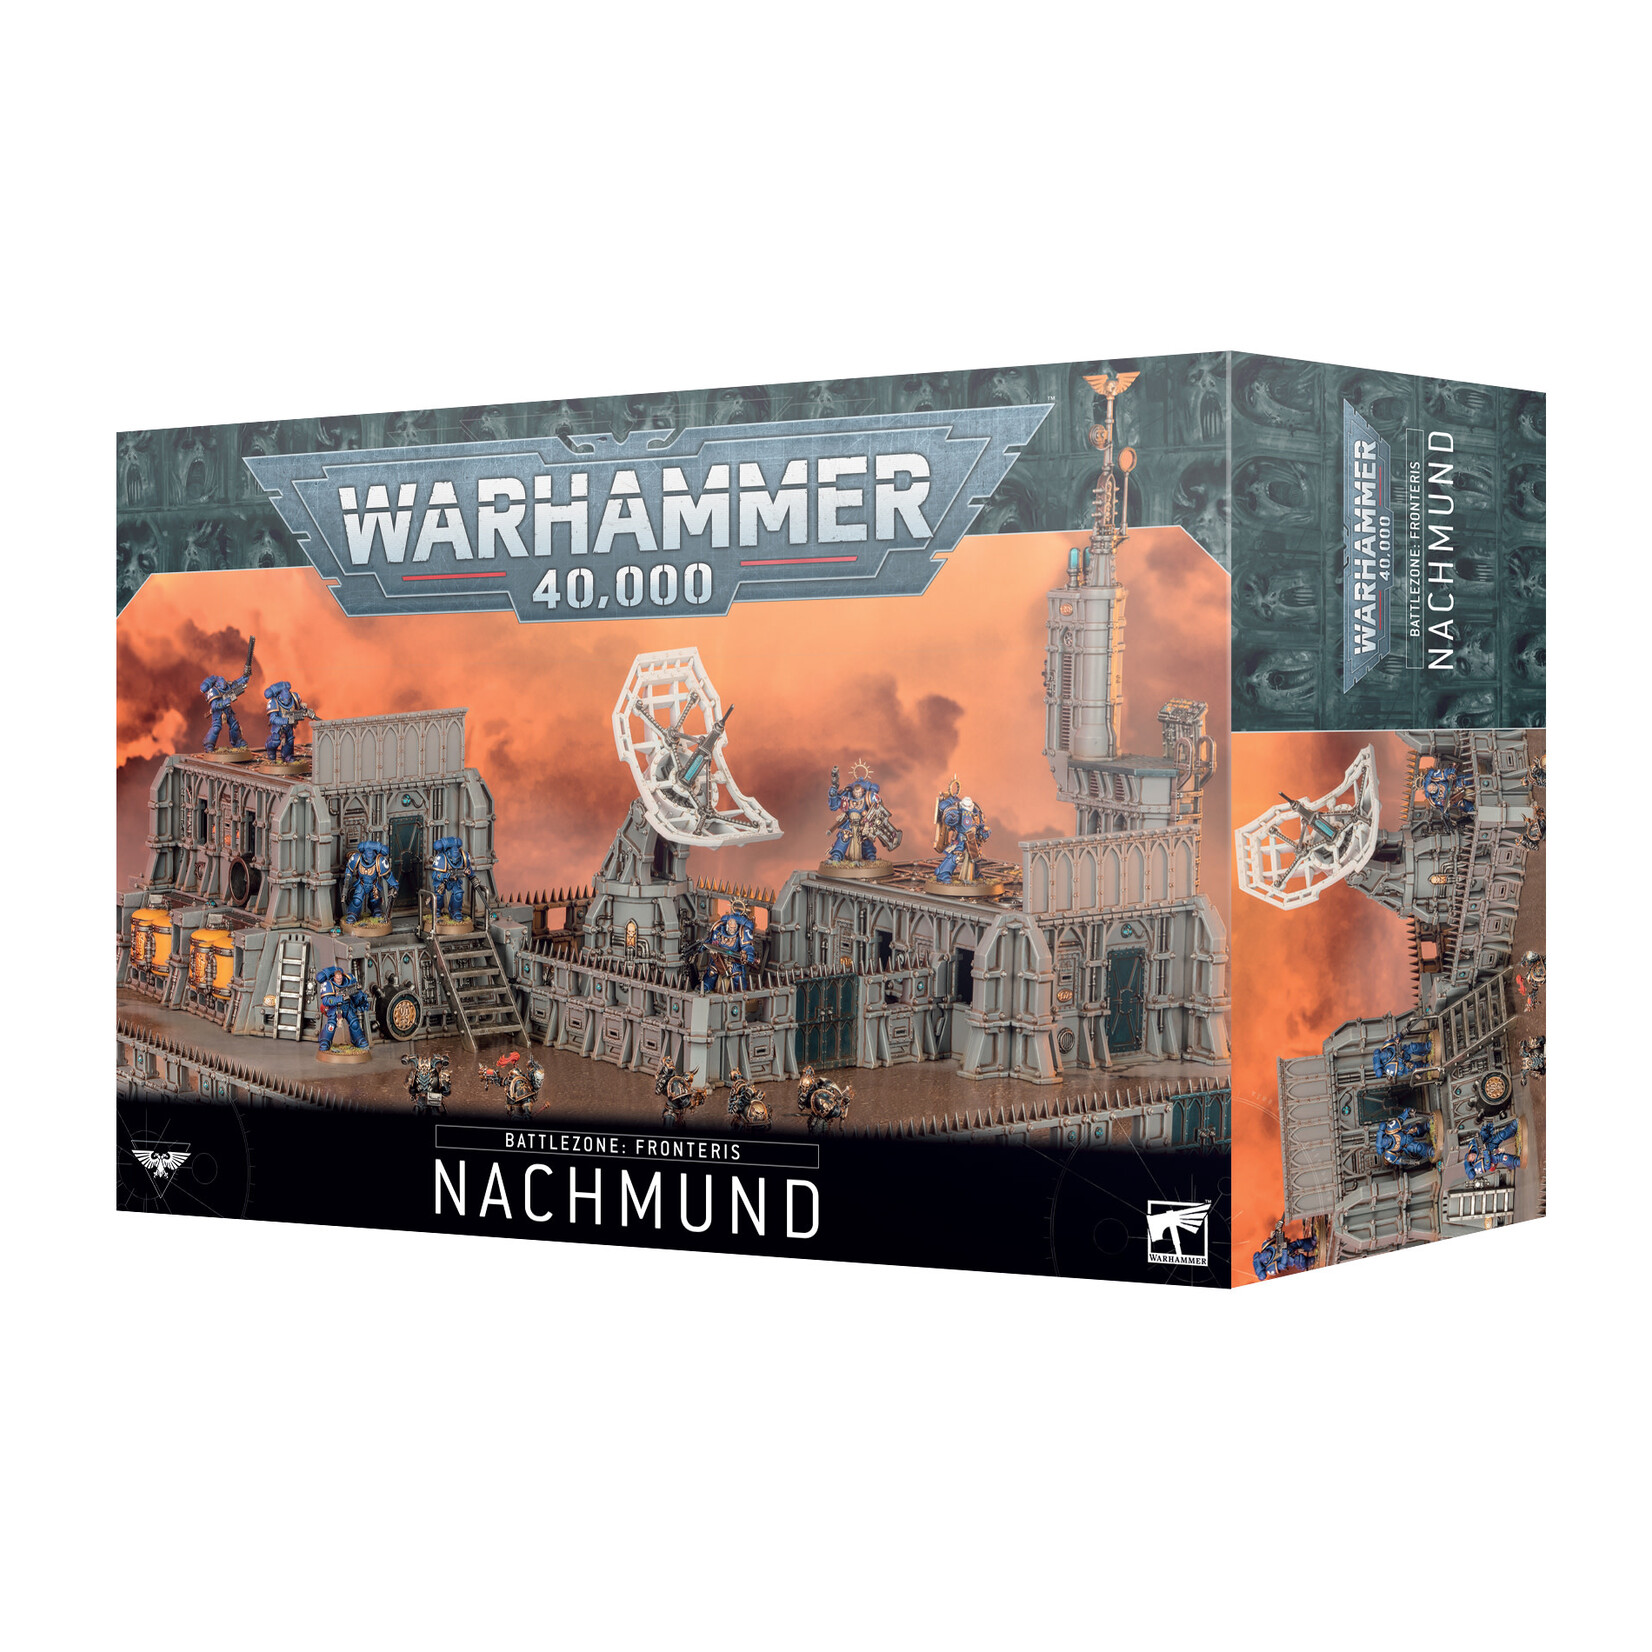 Games Workshop Warhammer - Battlezone Fronteris Nachmund